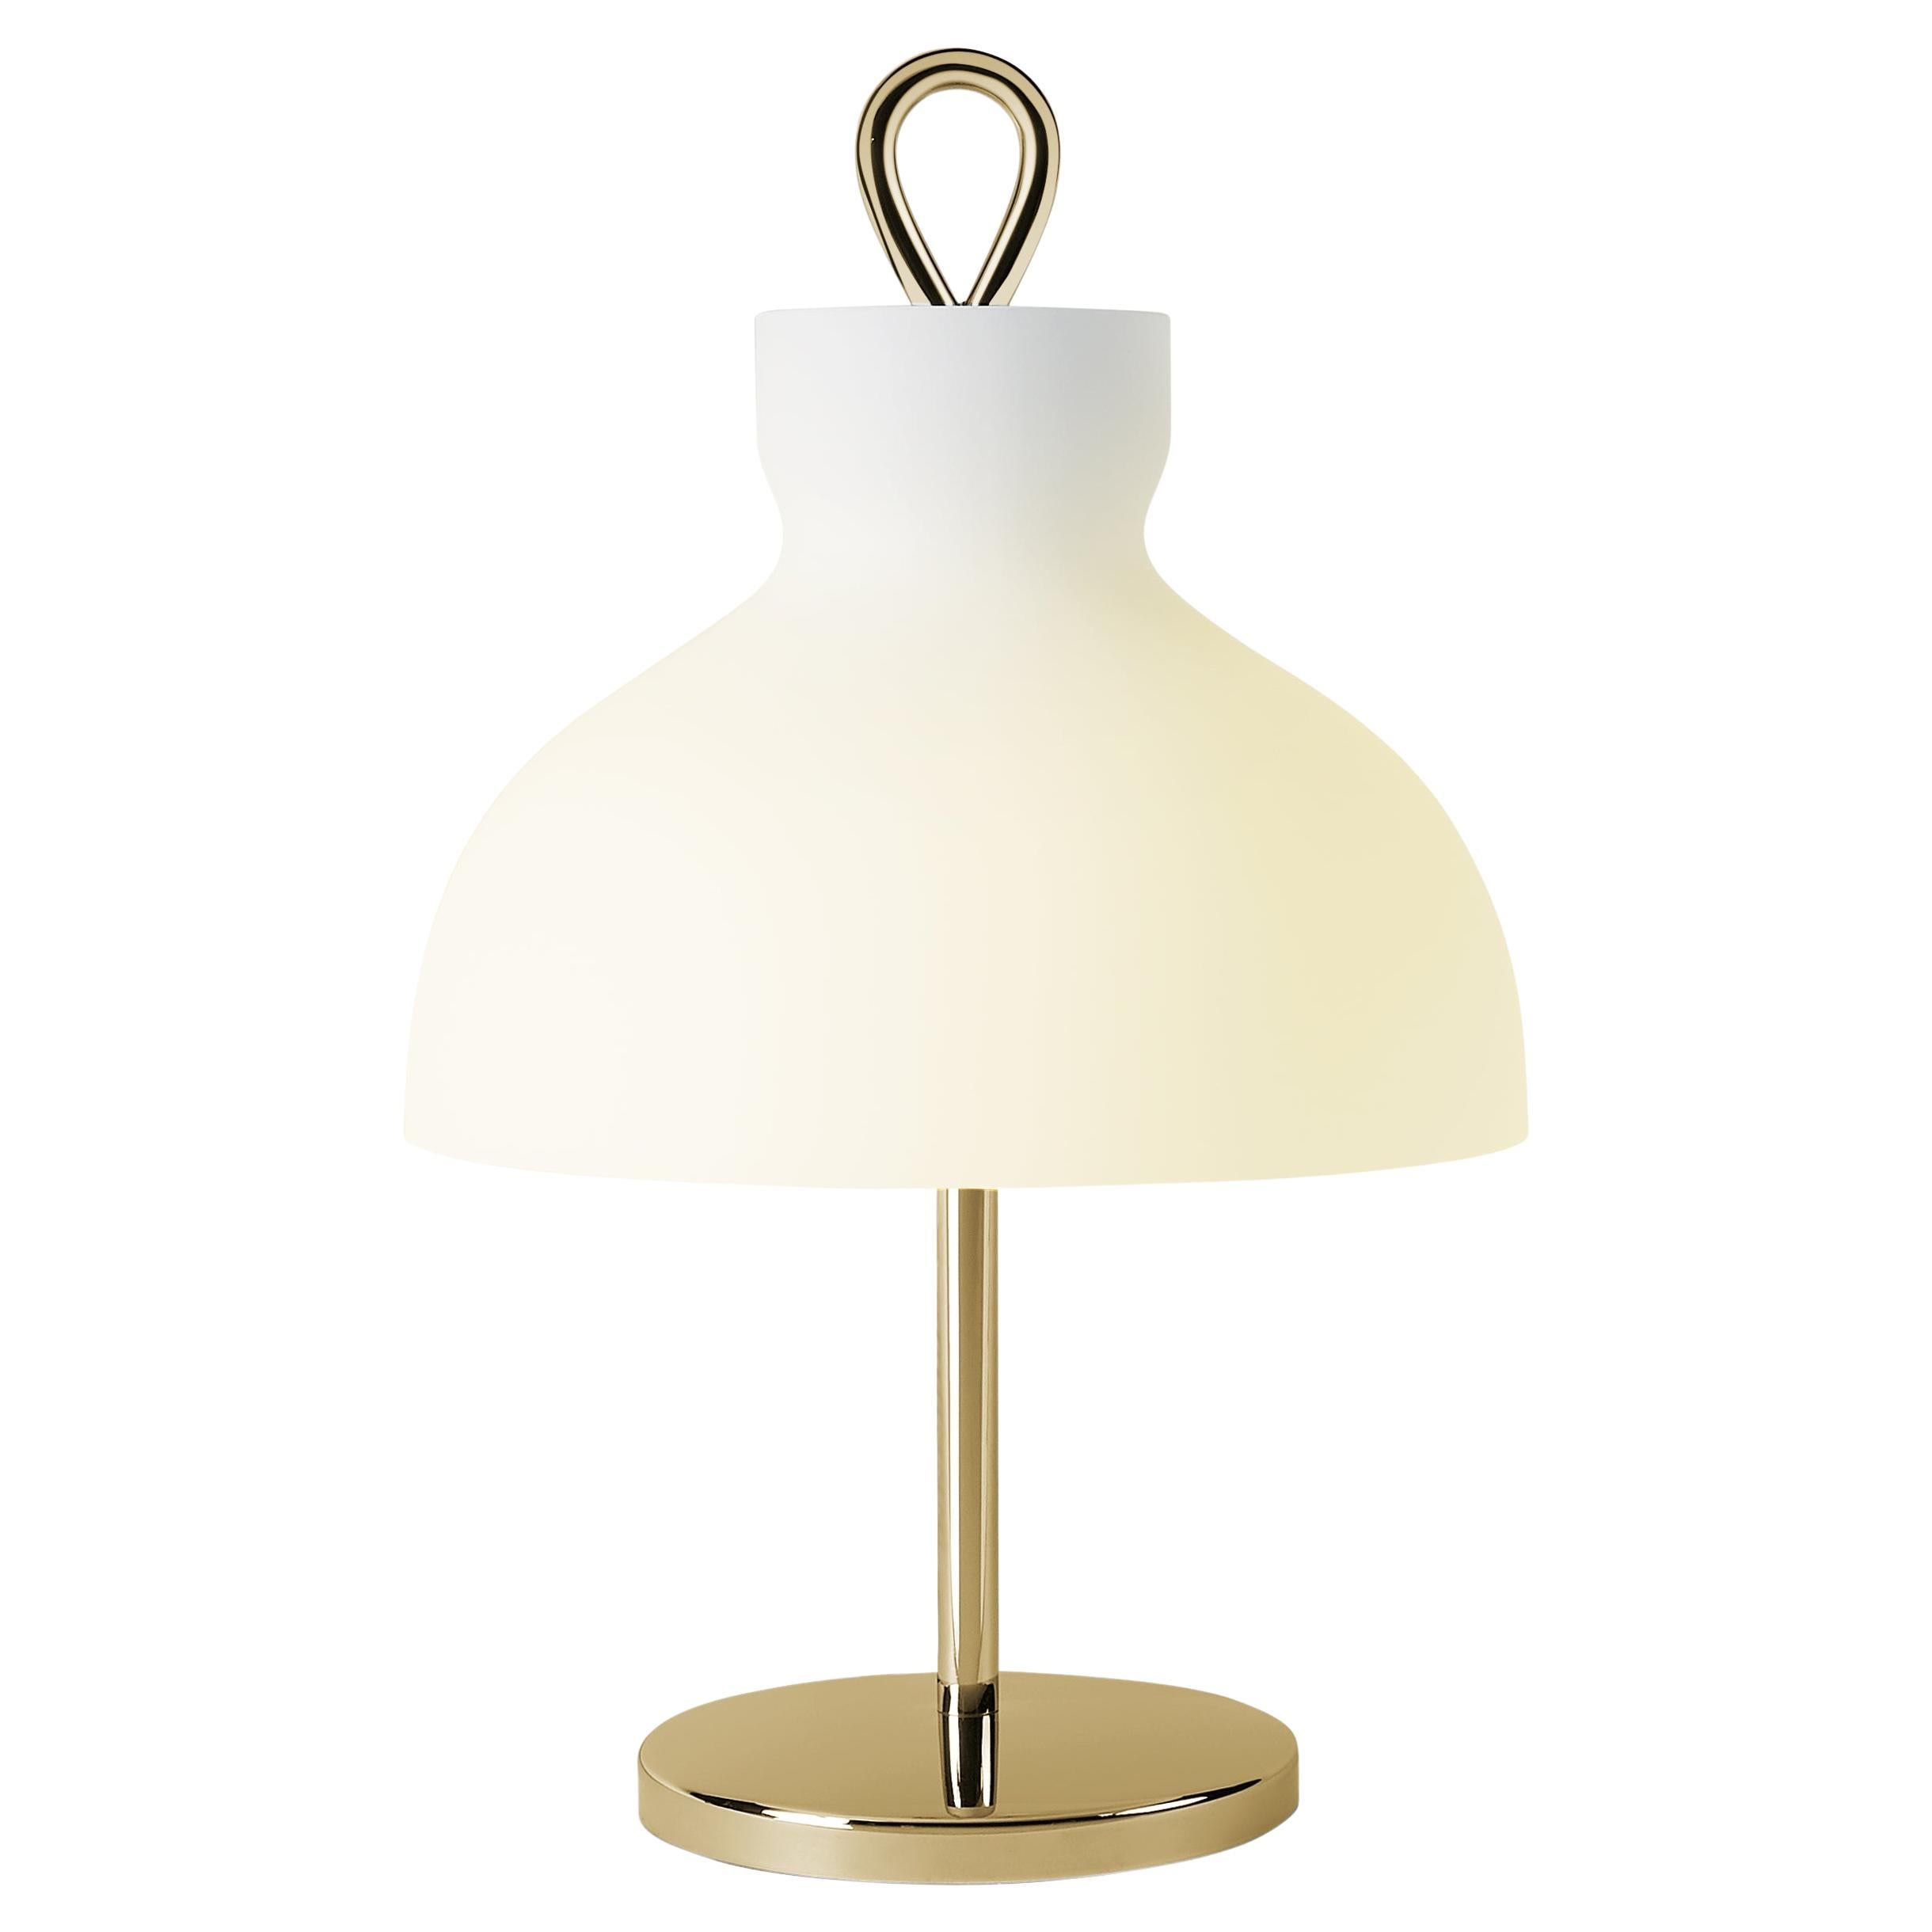 Ignazio Gardella 'Arenzano Bassa' Table Lamp in Brass and Glass For Sale